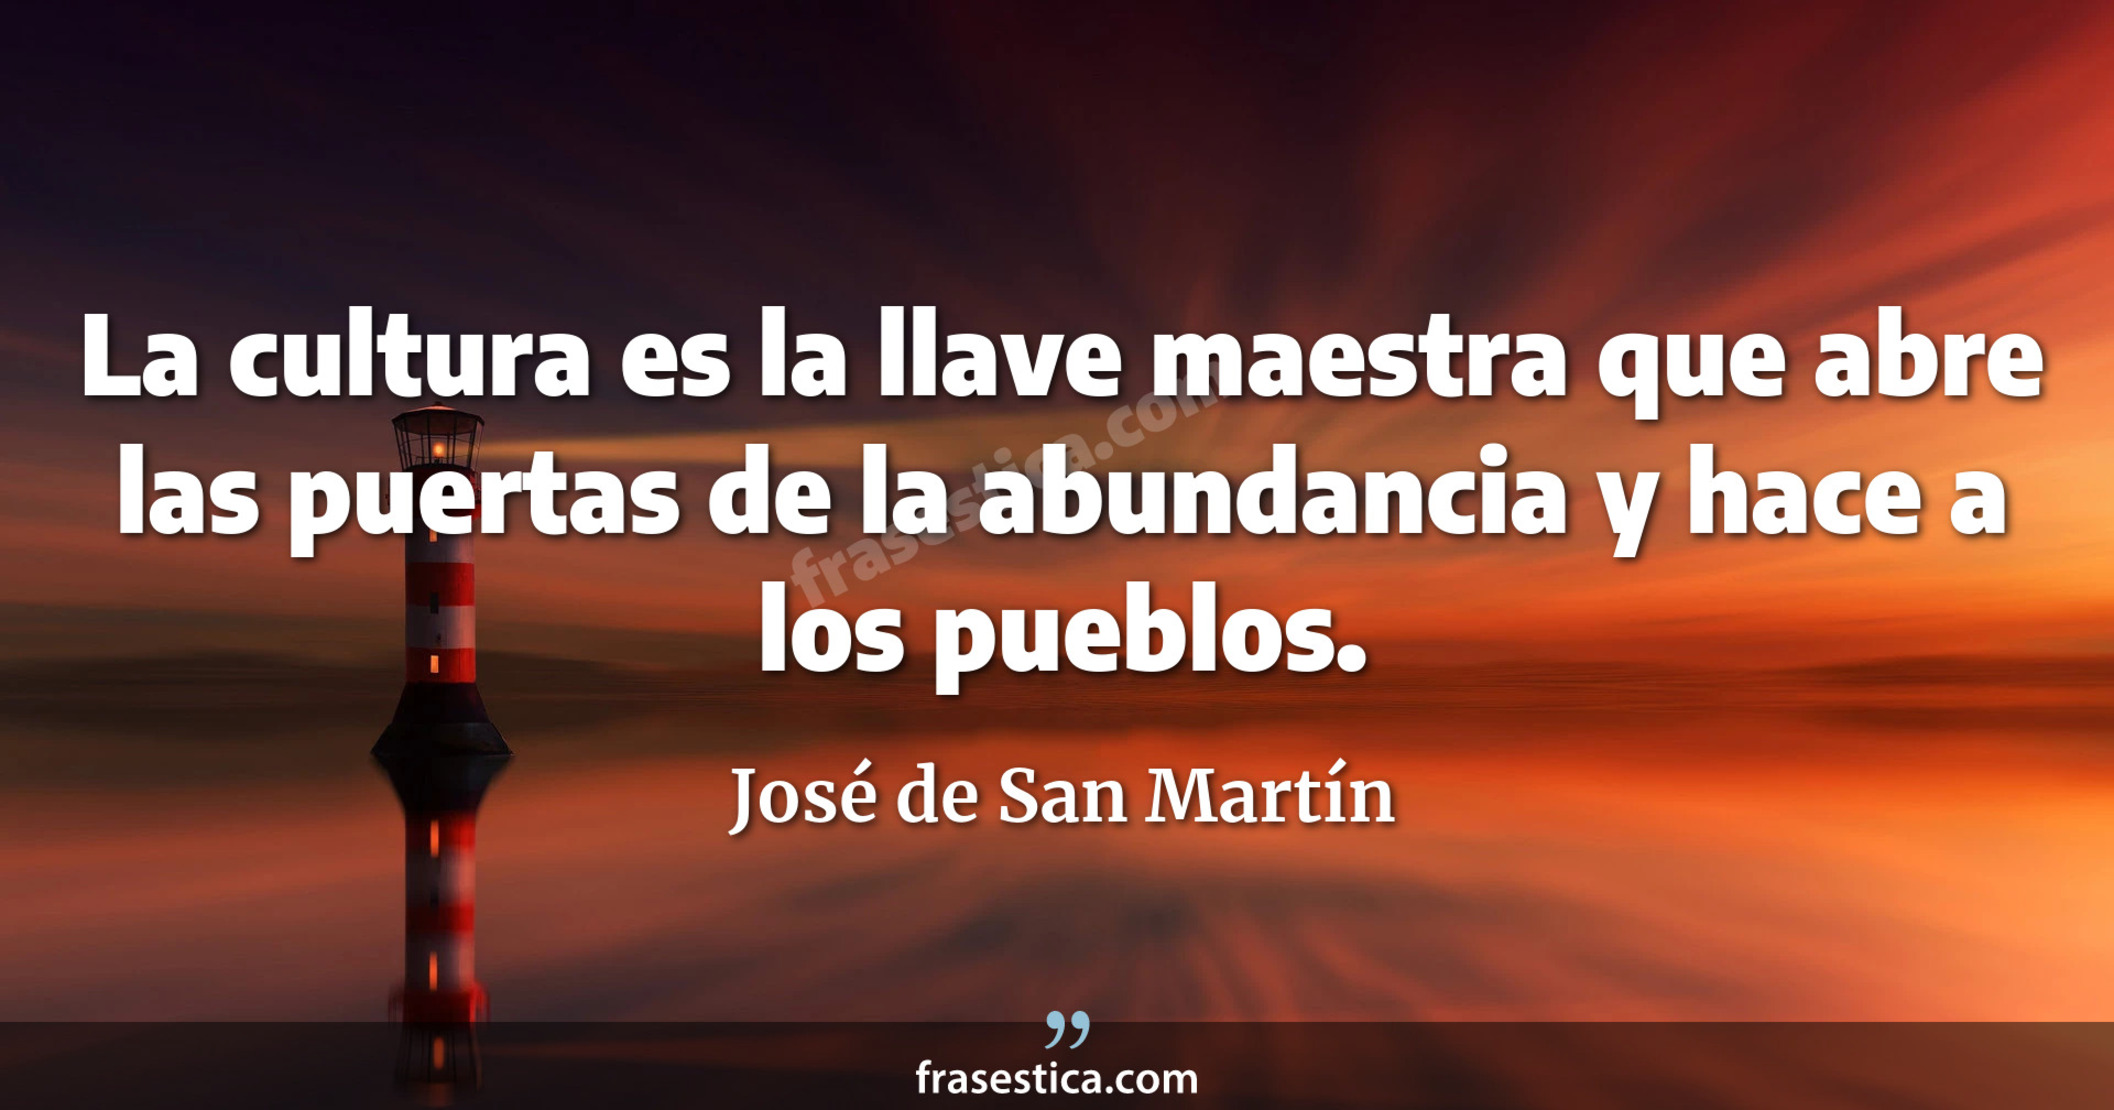 La cultura es la llave maestra que abre las puertas de la abundancia y hace a los pueblos. - José de San Martín